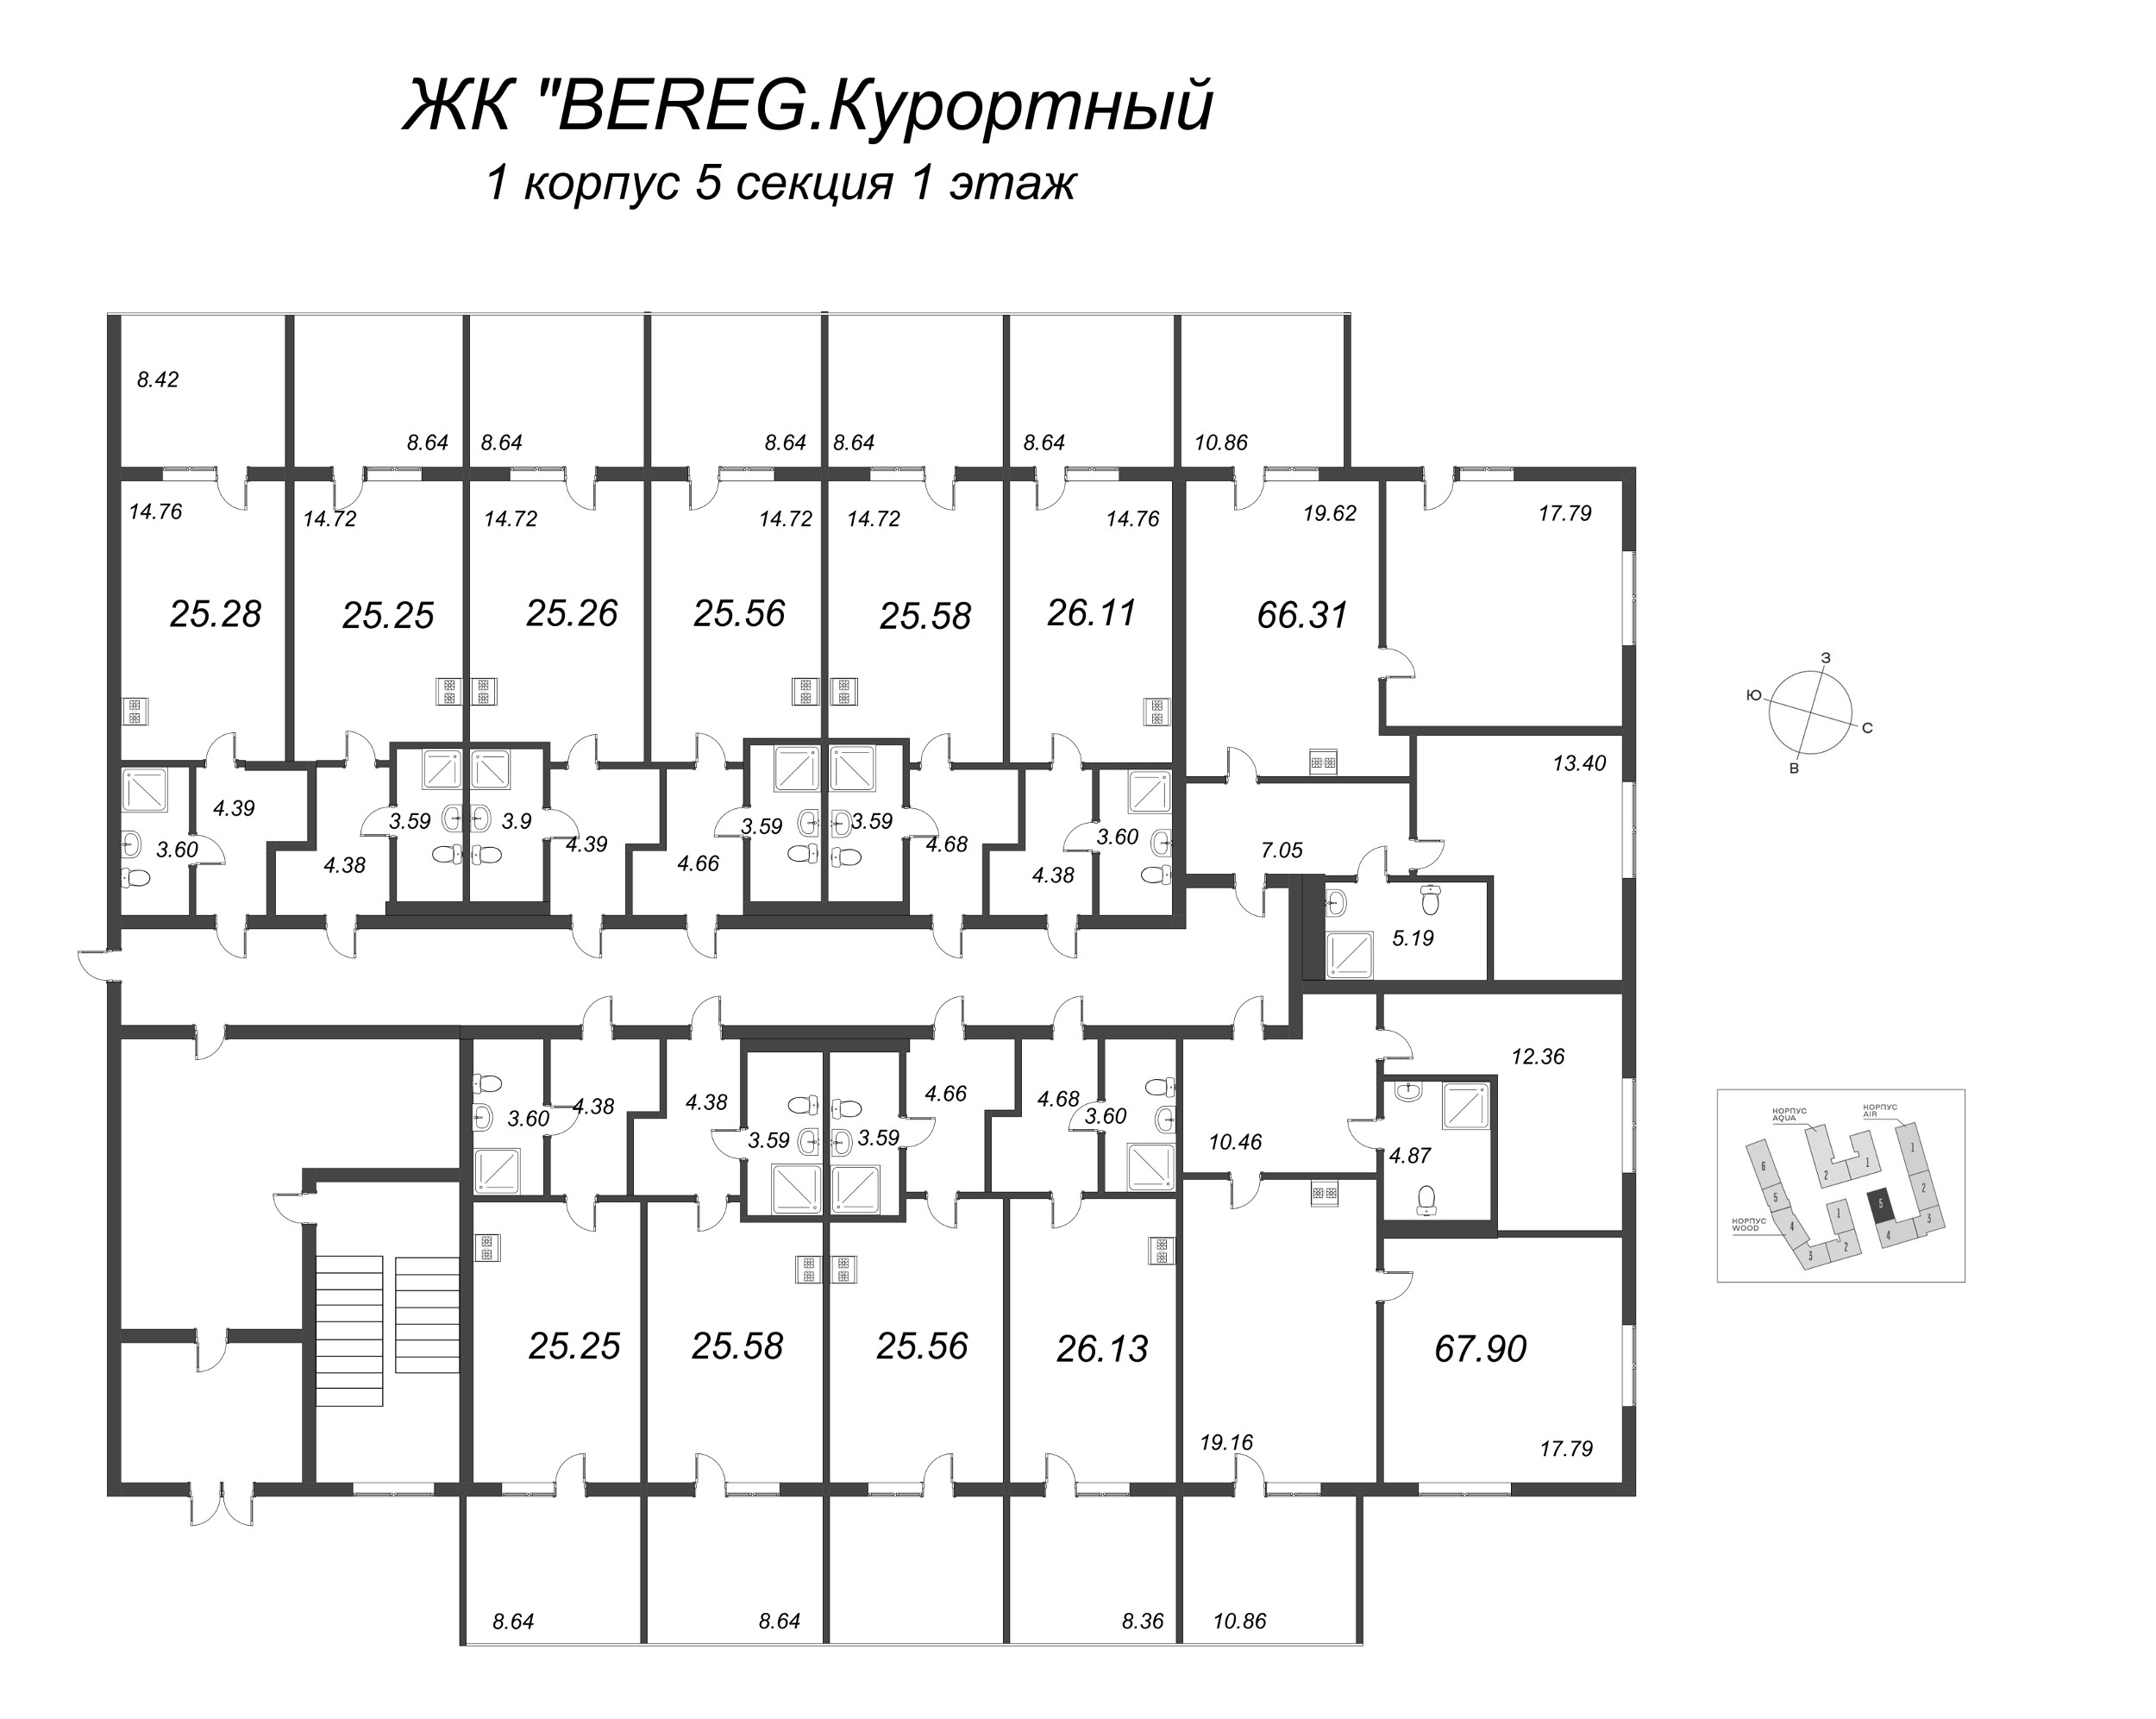 3-комнатная (Евро) квартира, 66.31 м² в ЖК "Bereg. Курортный" - планировка этажа